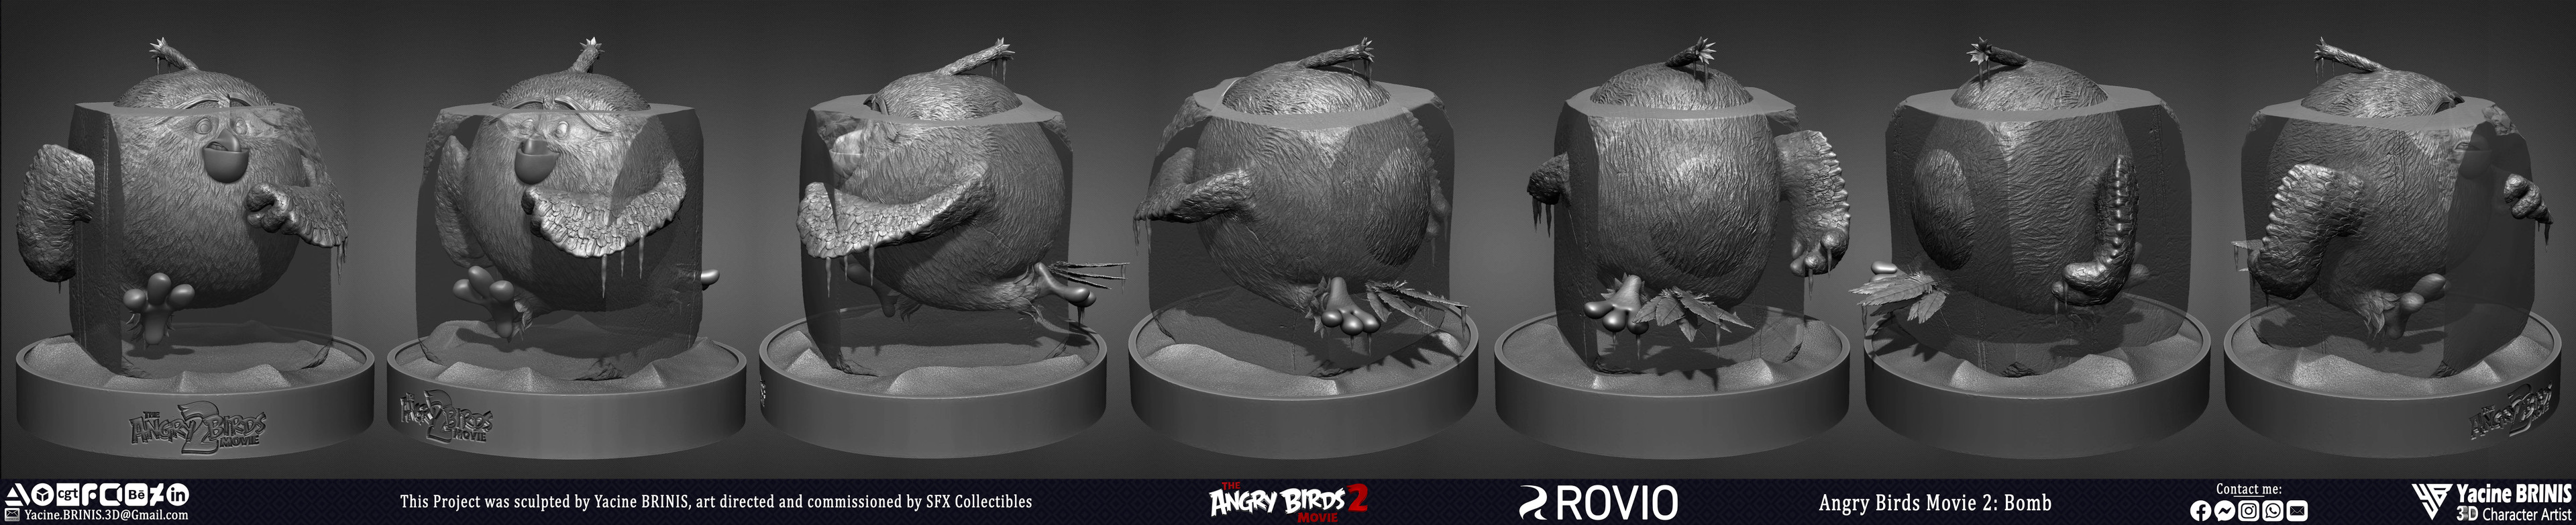 Angry Birds Movie 2 Rovio Entertainment Sculpted by Yacine BRINIS 013 Bomb